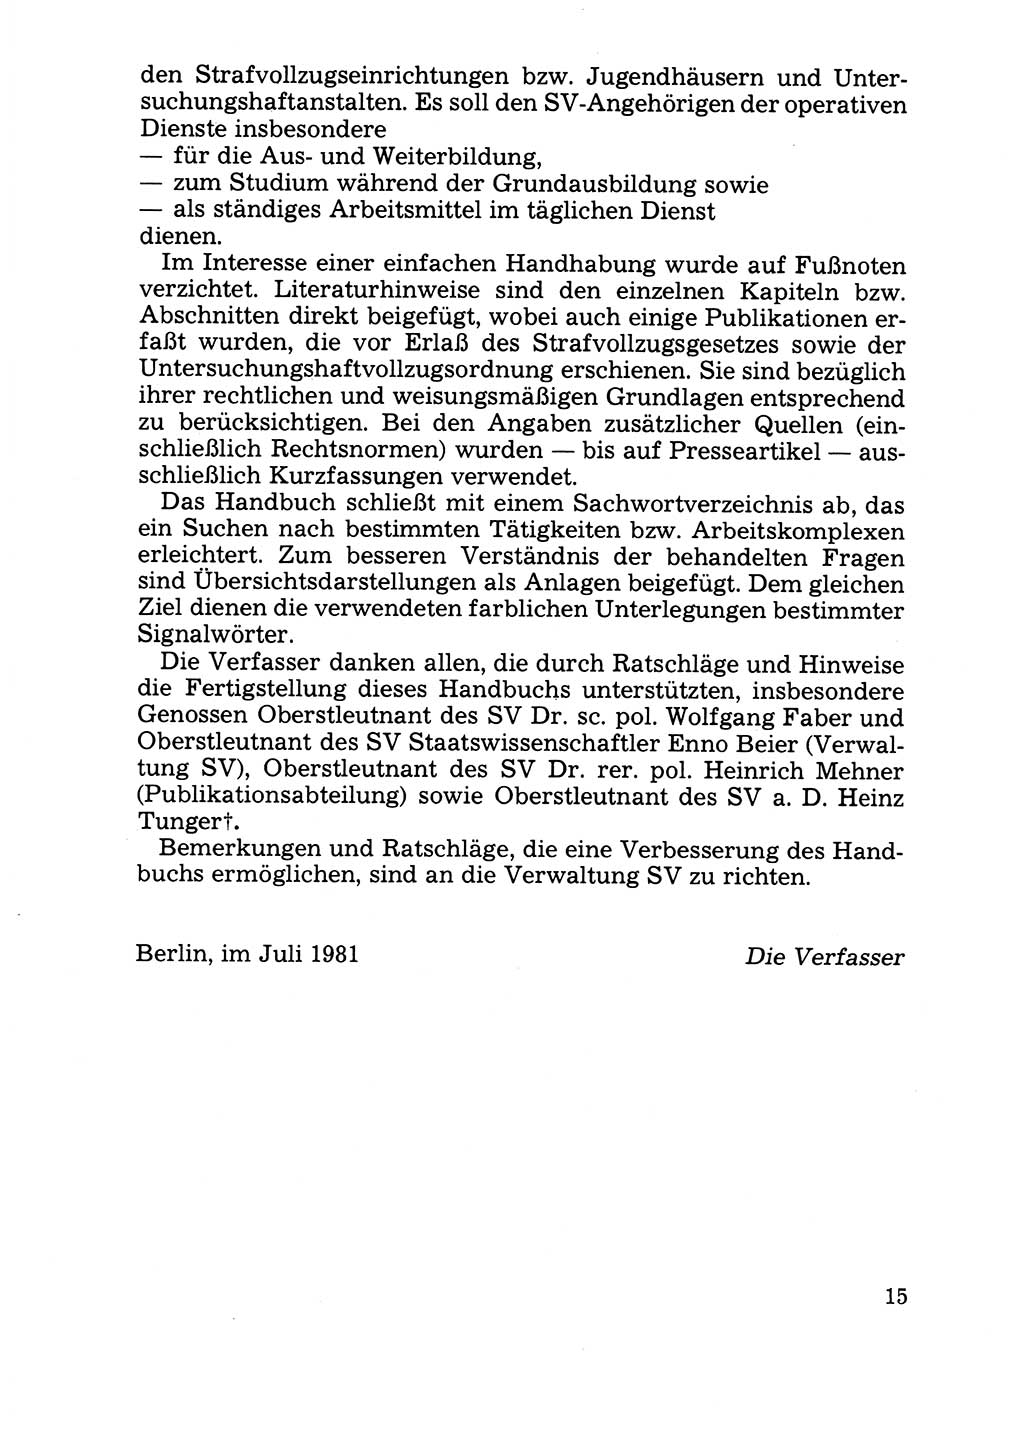 Handbuch für operative Dienste, Abteilung Strafvollzug (SV) [Ministerium des Innern (MdI) Deutsche Demokratische Republik (DDR)] 1981, Seite 15 (Hb. op. D. Abt. SV MdI DDR 1981, S. 15)